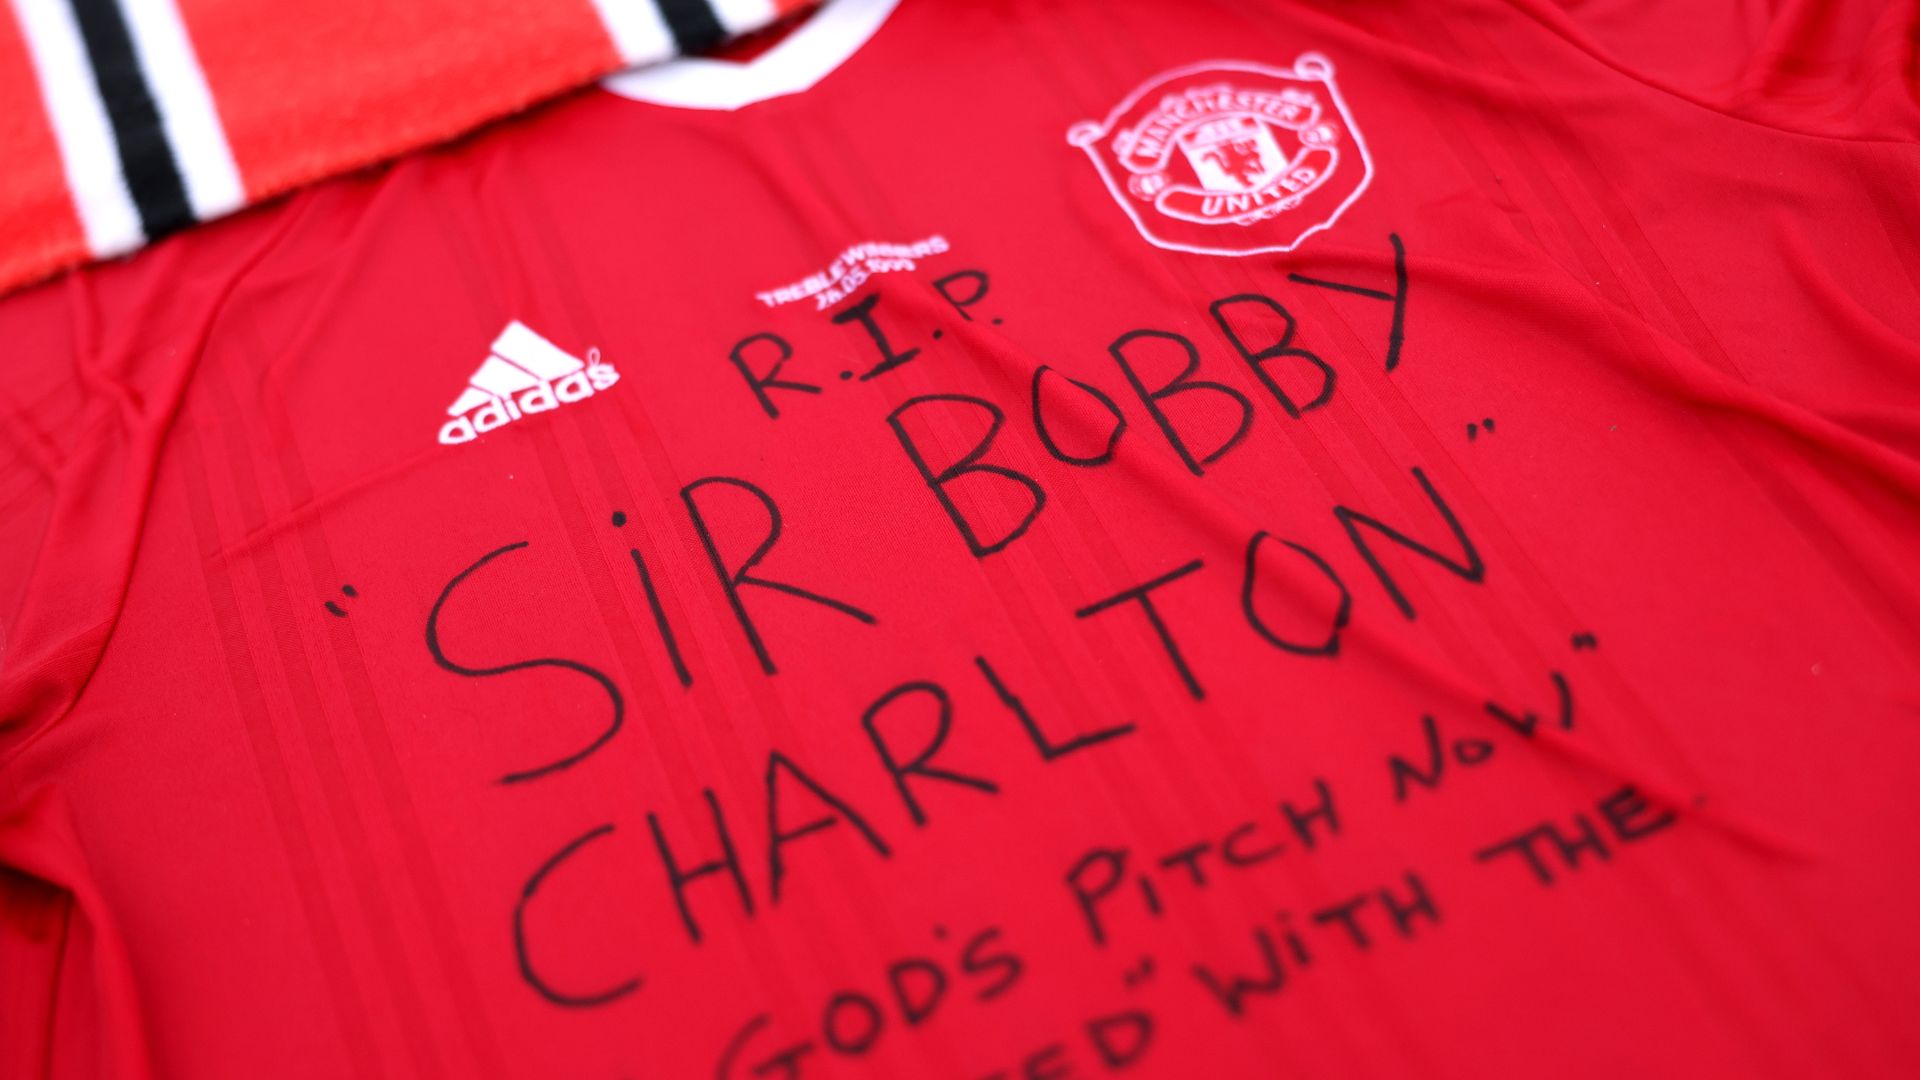 Camisa em tributo á morte de Sir Bobby Charlton (Crédito: Getty Images)